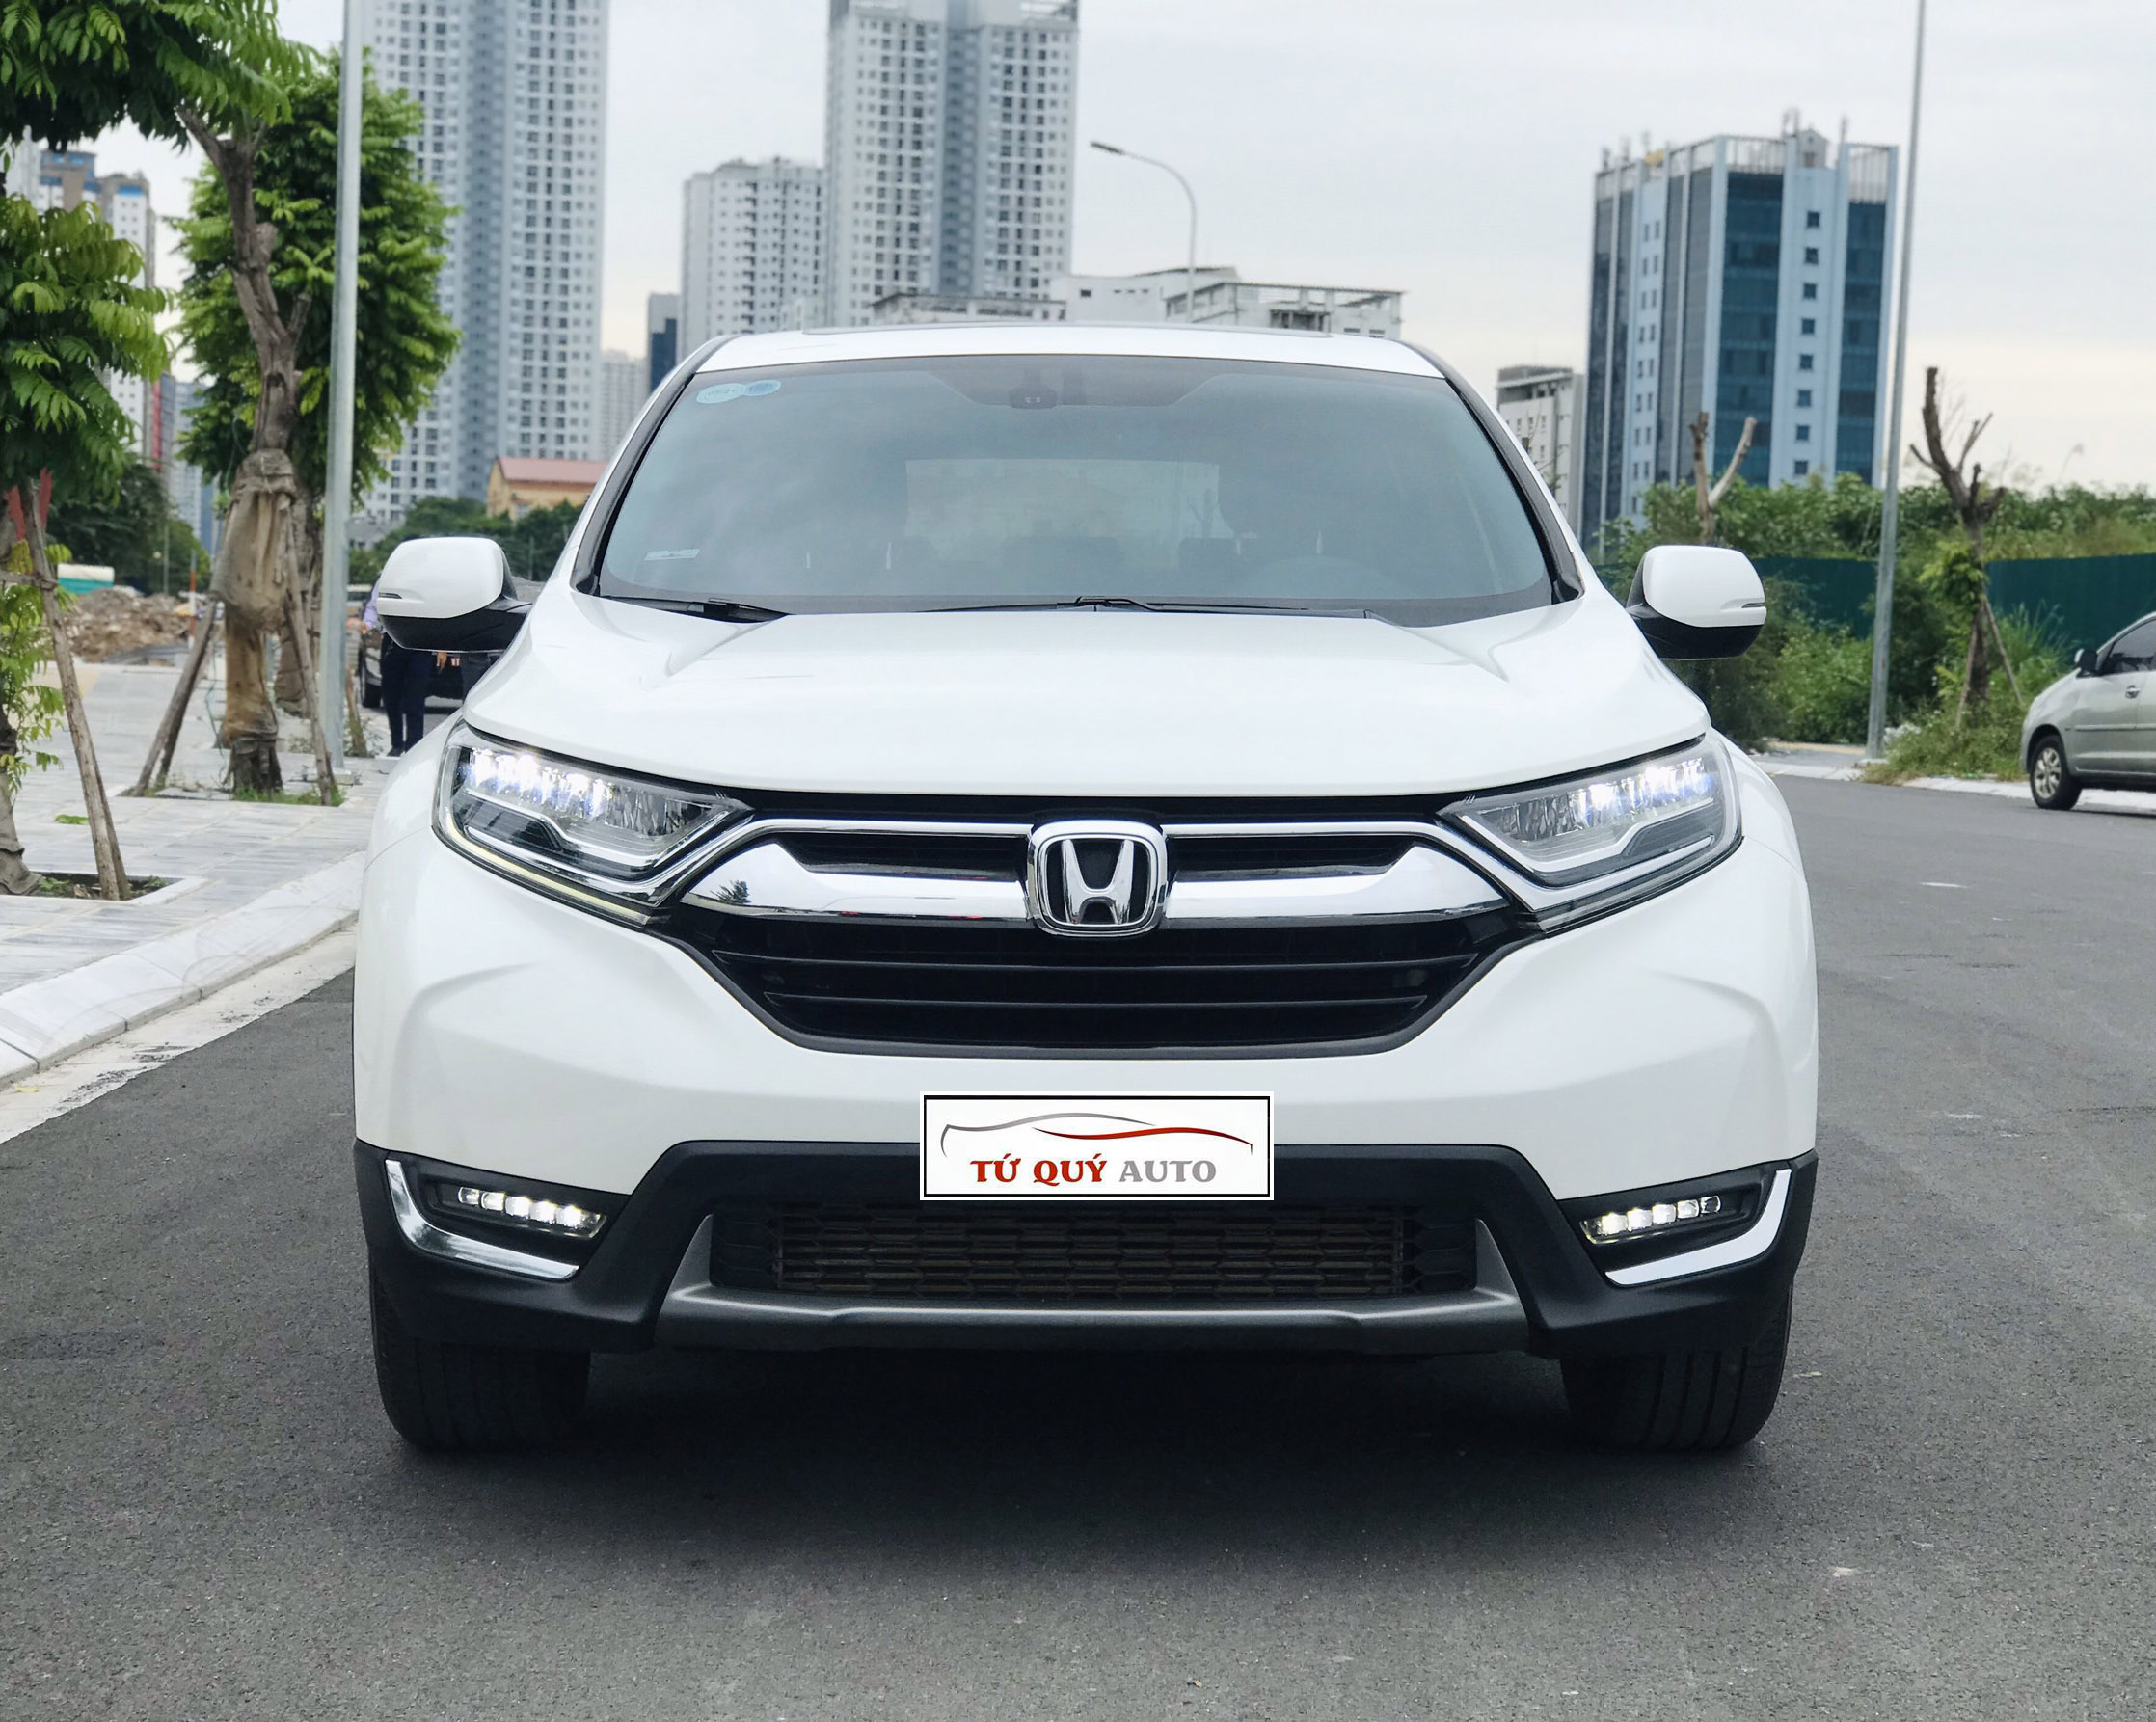 Honda CRV 2018 nhập khẩu giá 900 triệu đắt hay rẻ